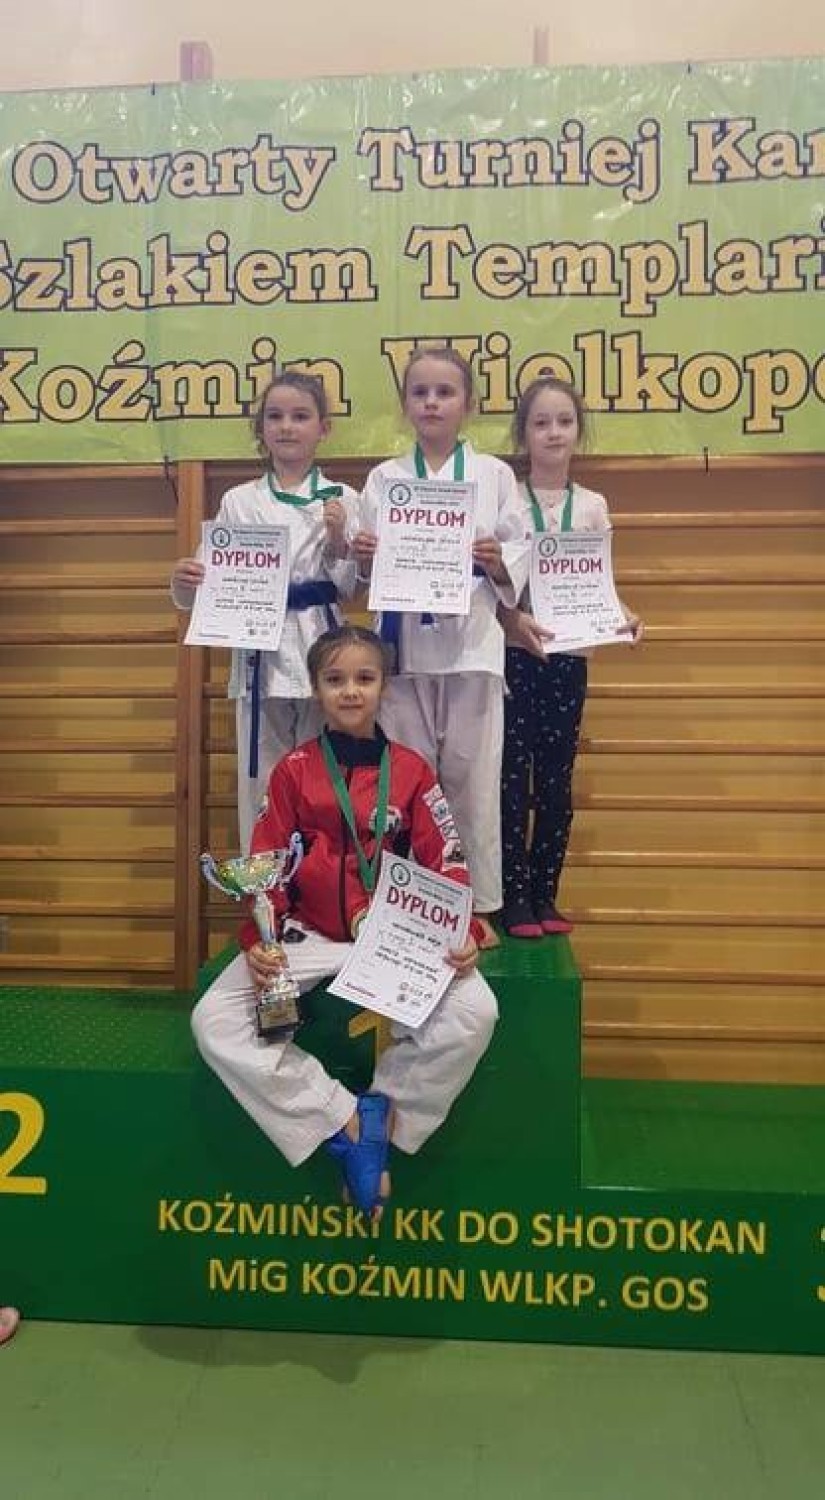 Dziewięć medali wywalczyli najmłodsi karatecy podczas VII Otwartego Turnieju Karate Szlakiem Templariuszy w Koźminie Wielkopolskim